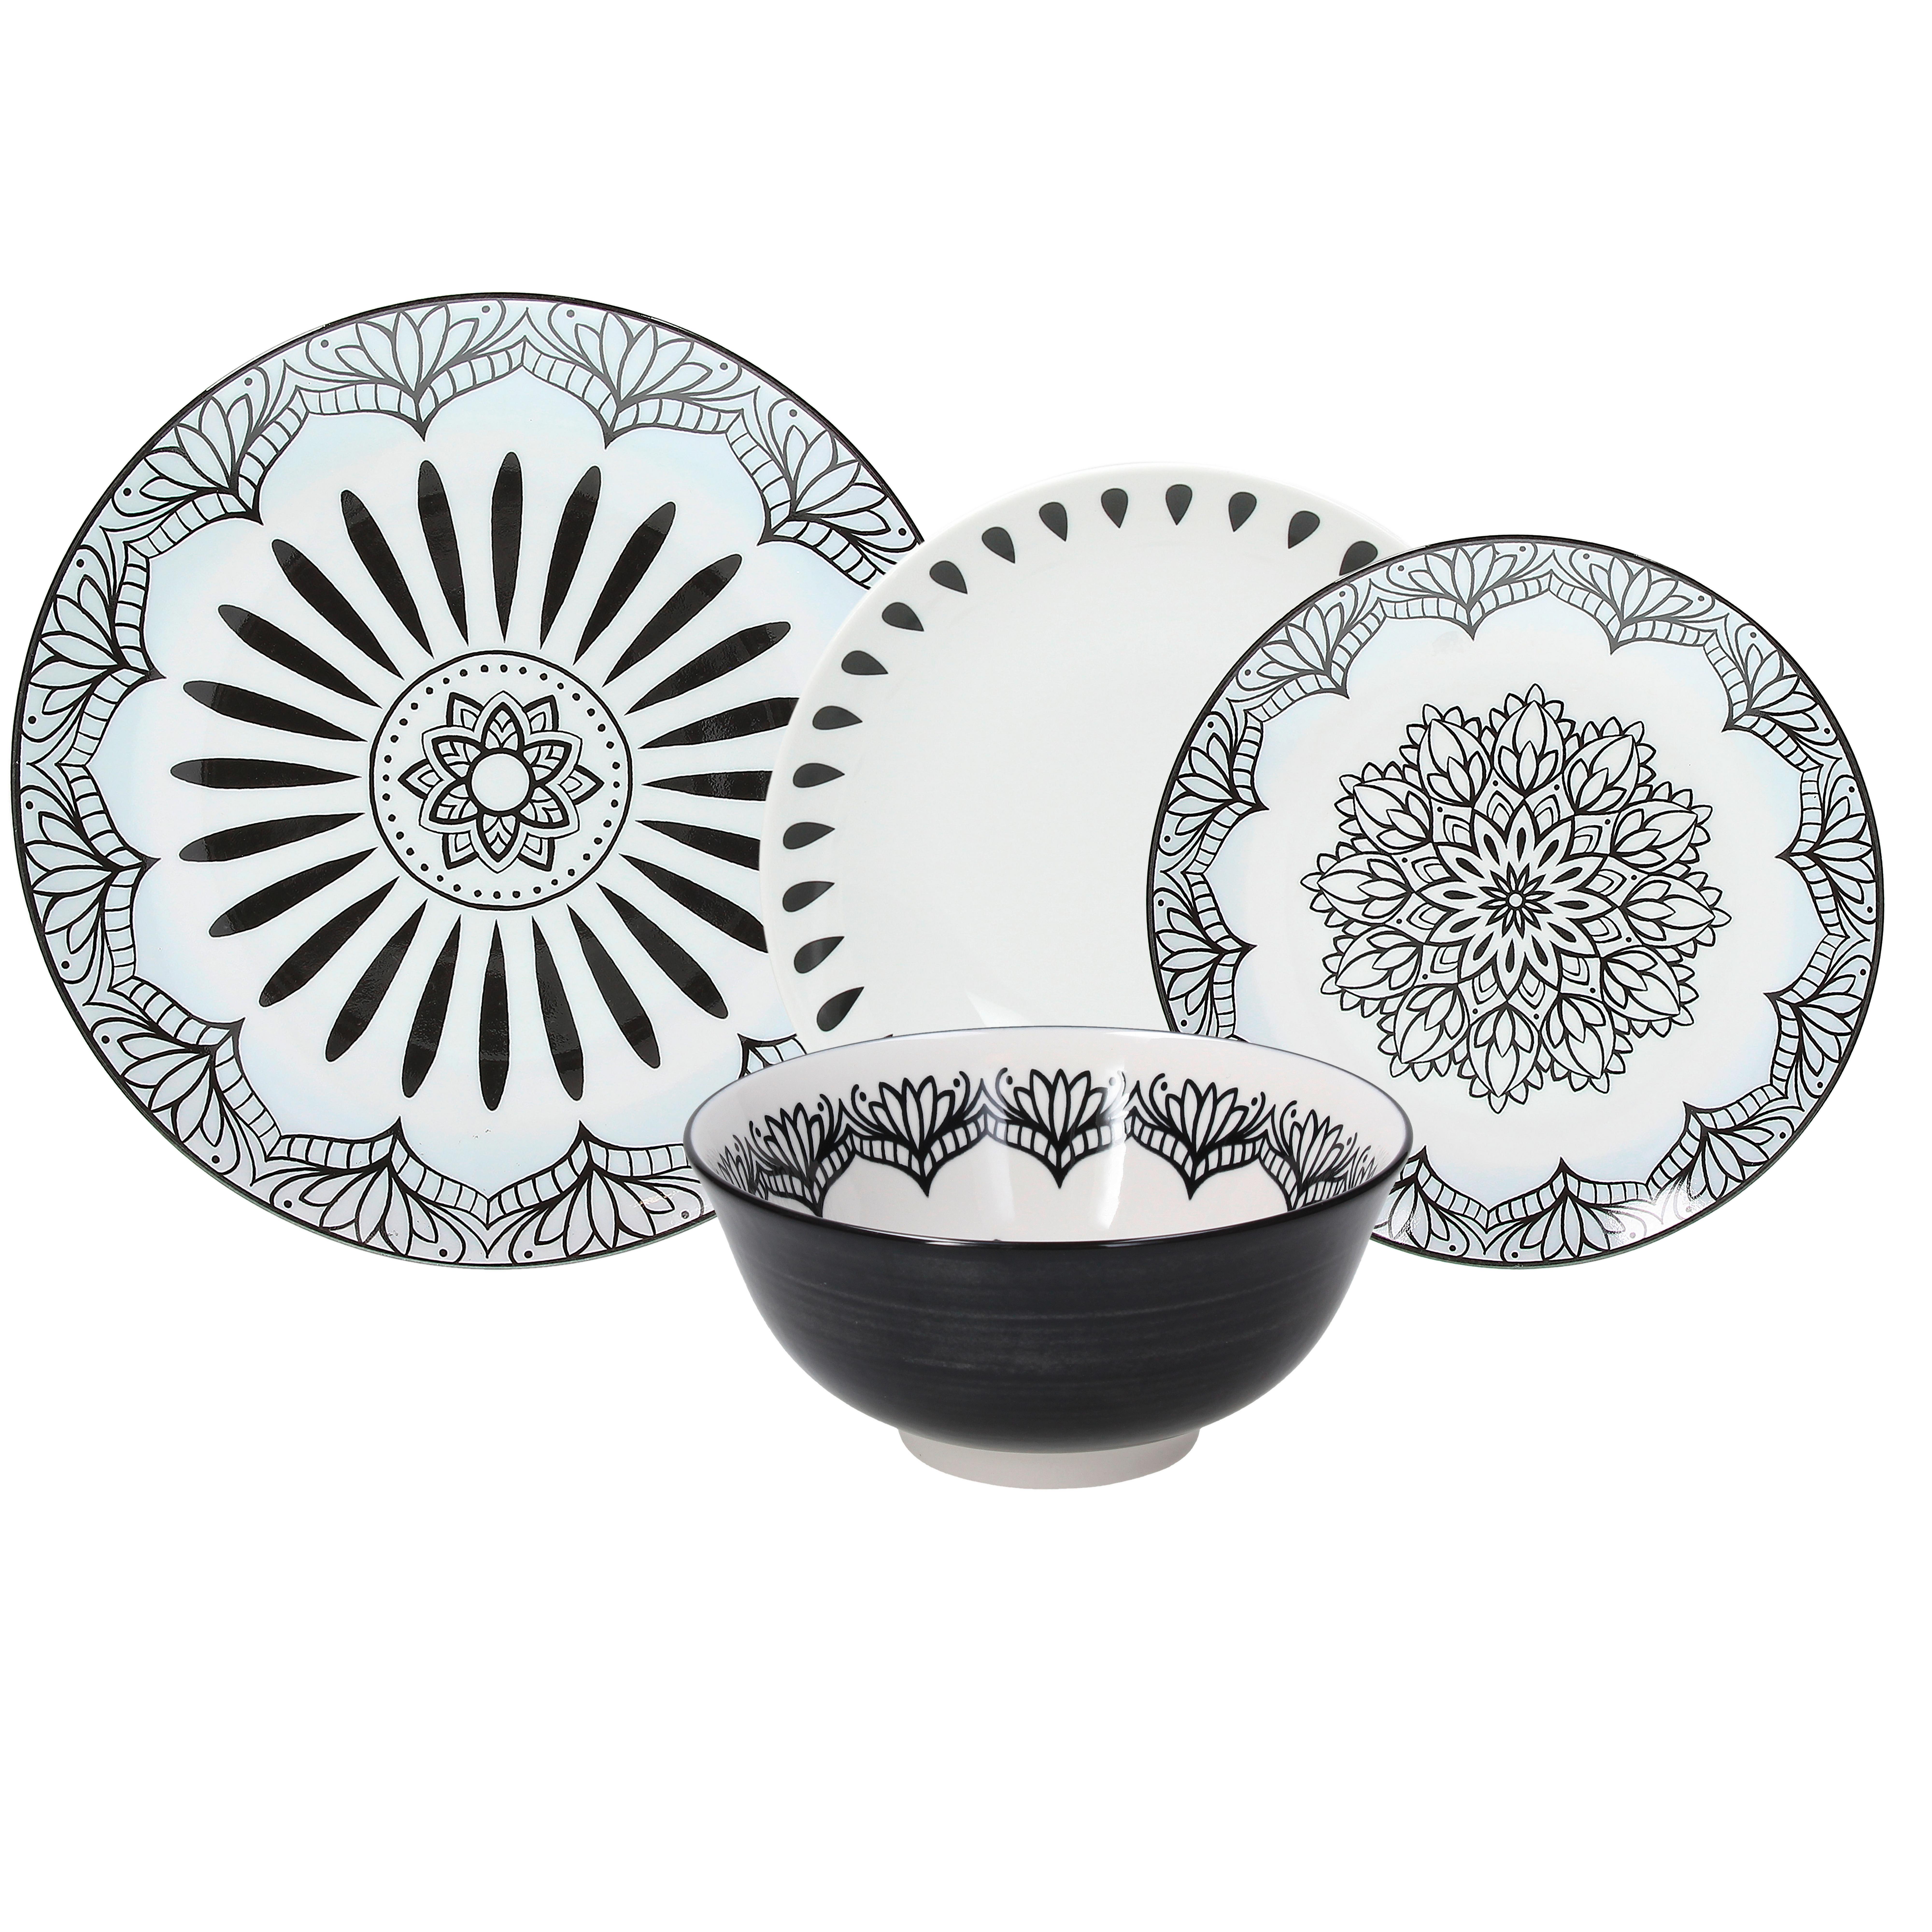 Kombinovaný Servis Mandala Chic, 24dílný - bílá/černá, Lifestyle, keramika - Premium Living